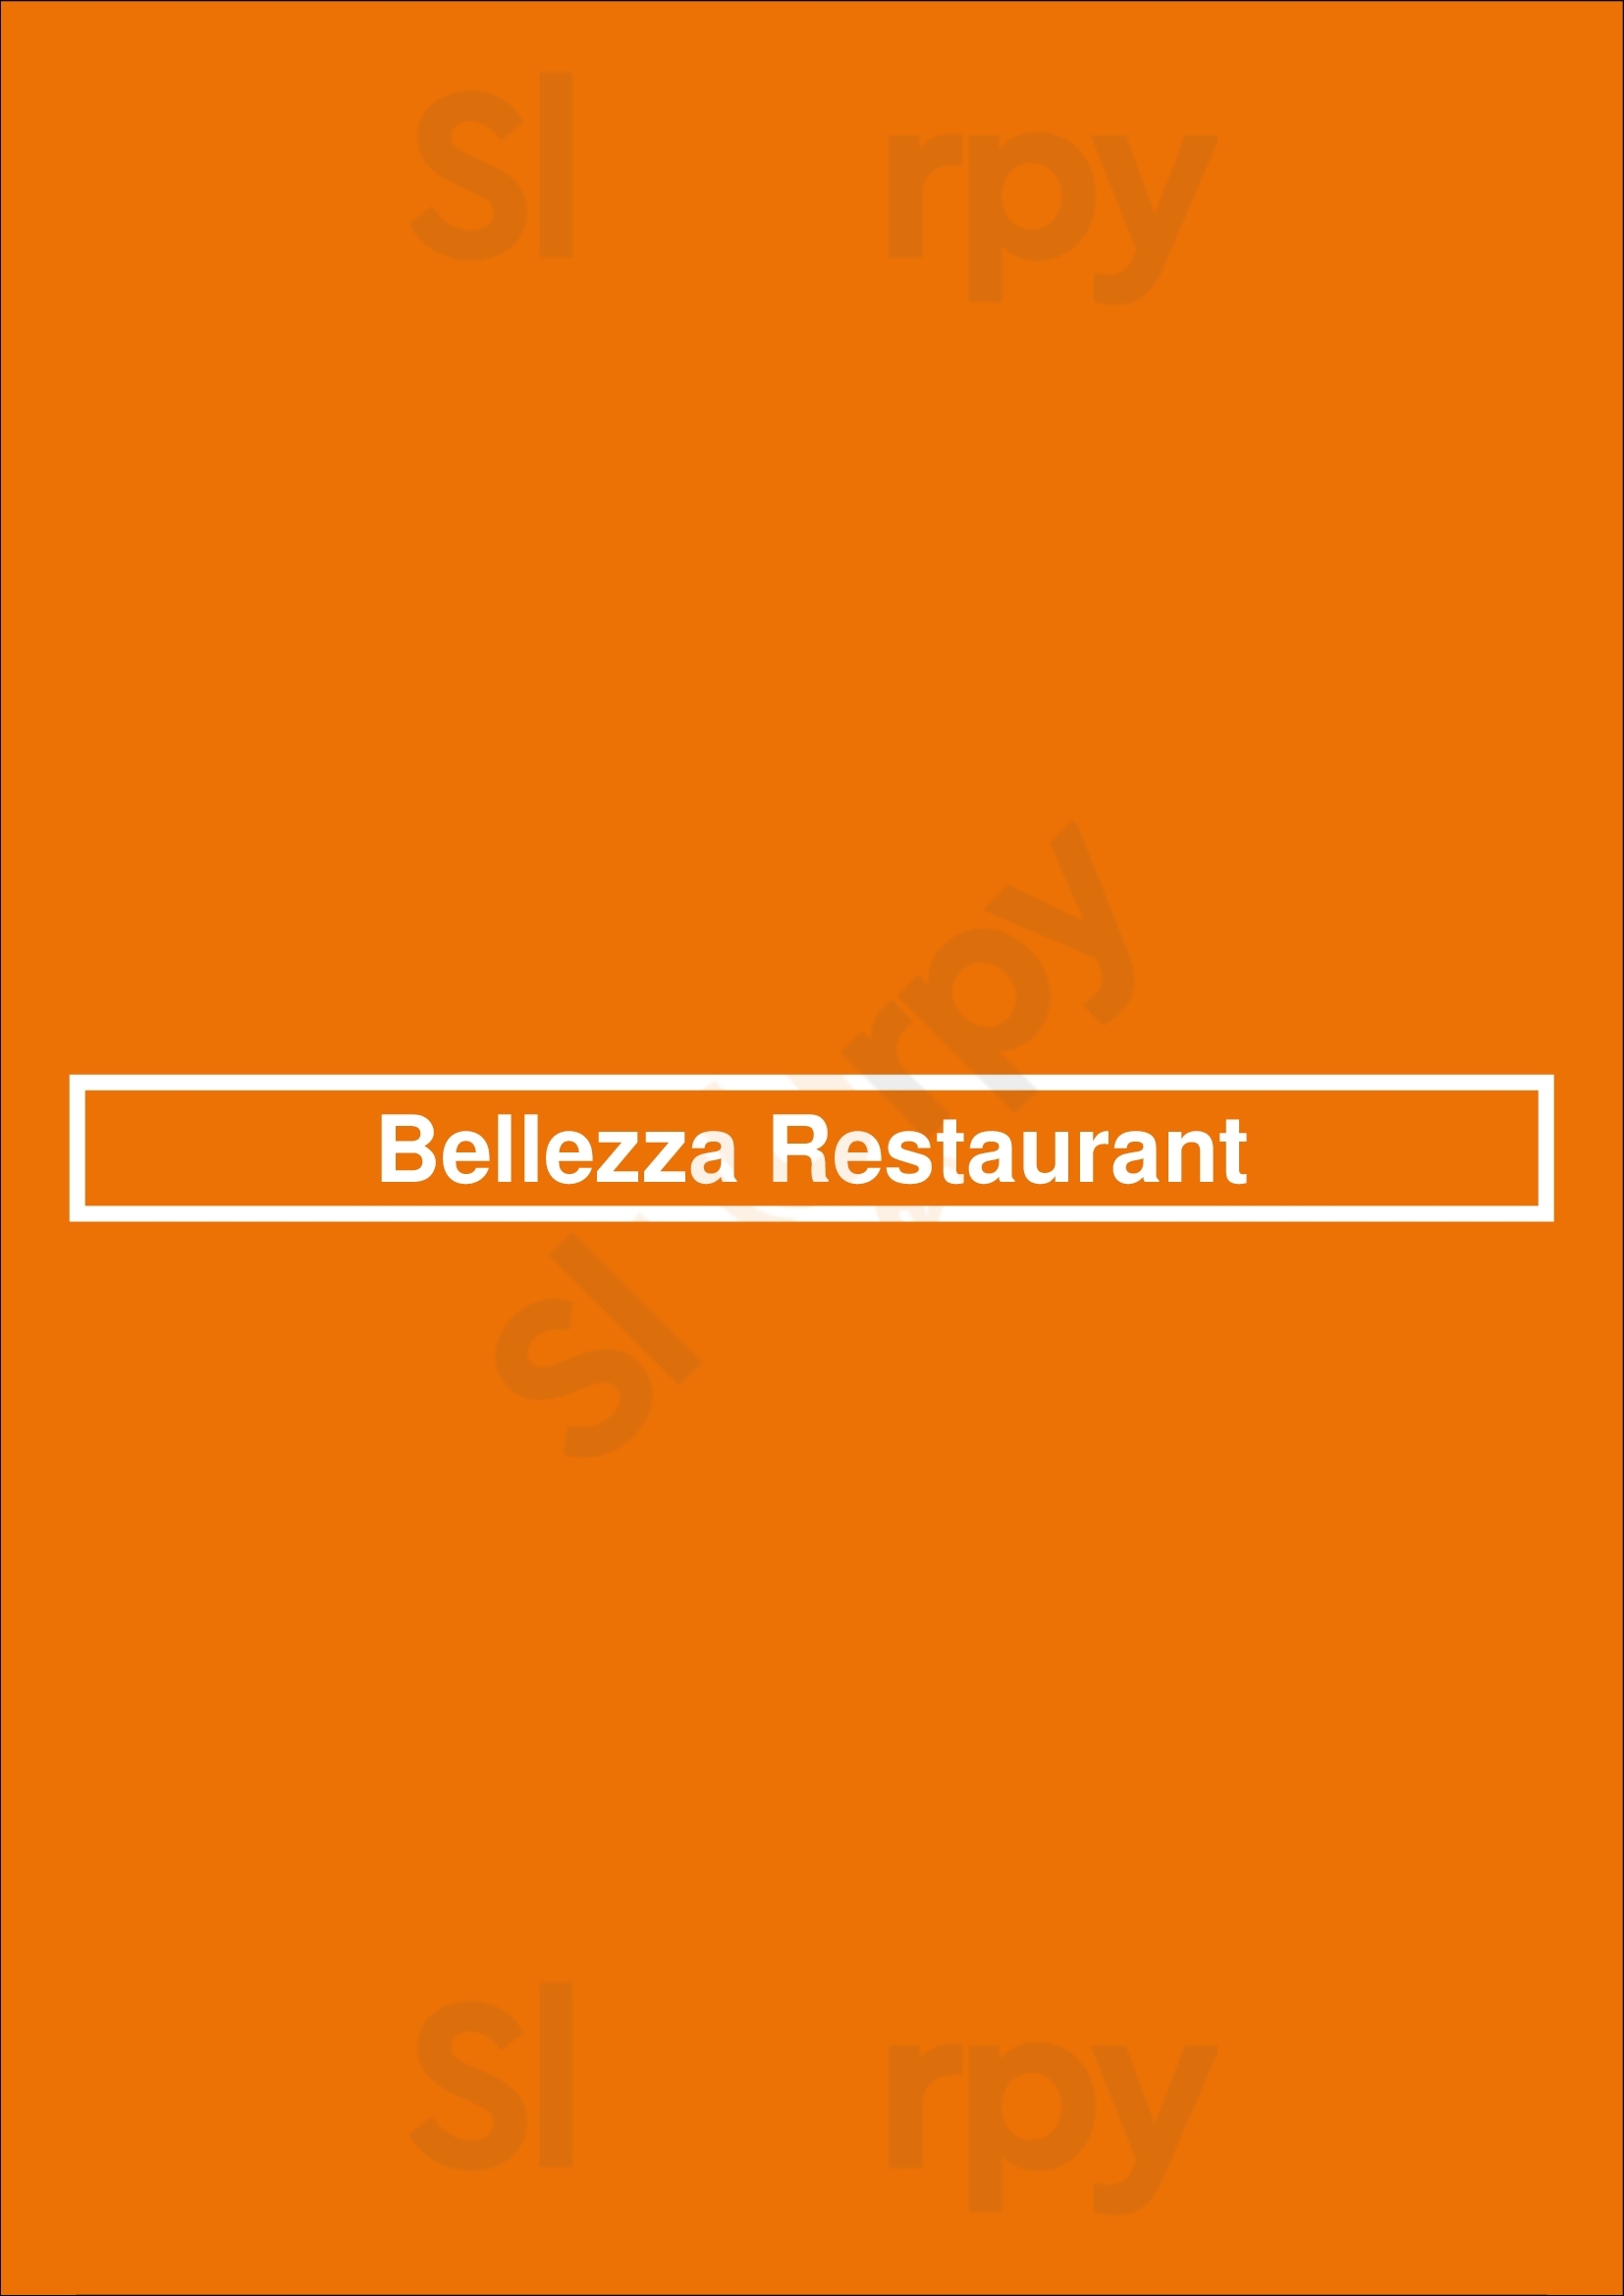 Bellezza Restaurant Malvern Menu - 1